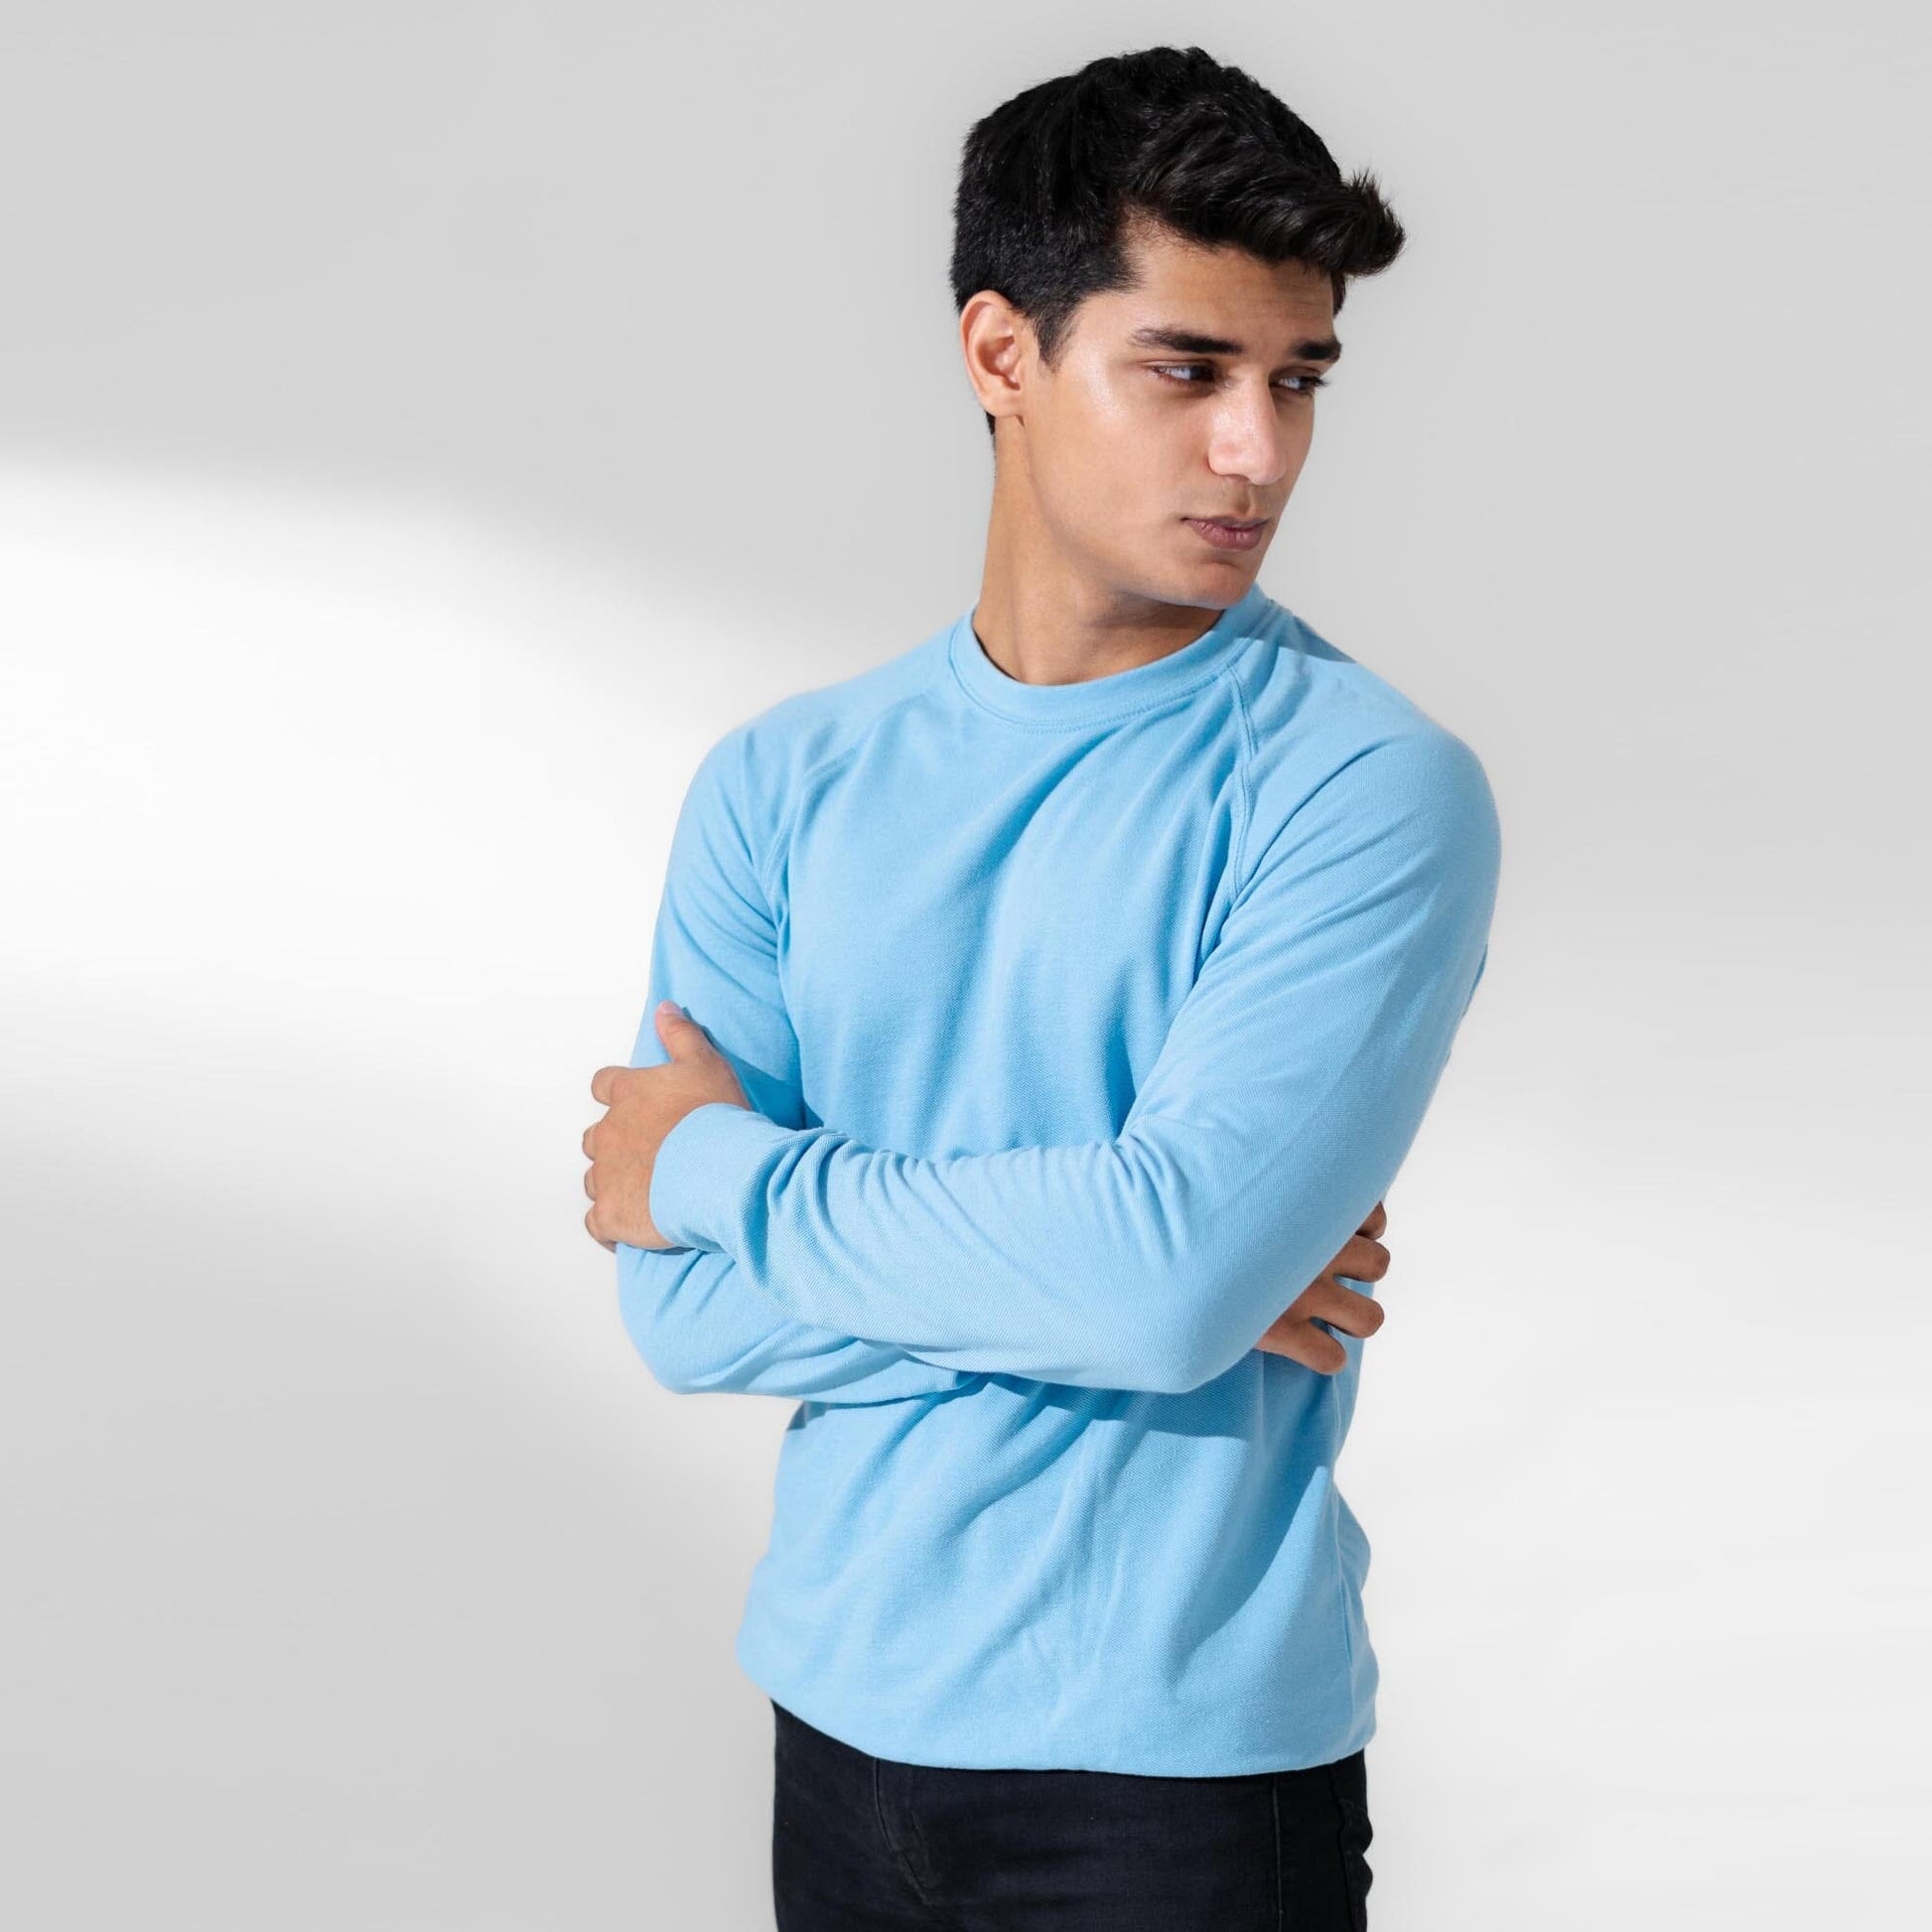 Polo Republica Men's Essentials Raglan Long Sleeve Pique Tee Shirt Men's Tee Shirt Polo Republica 